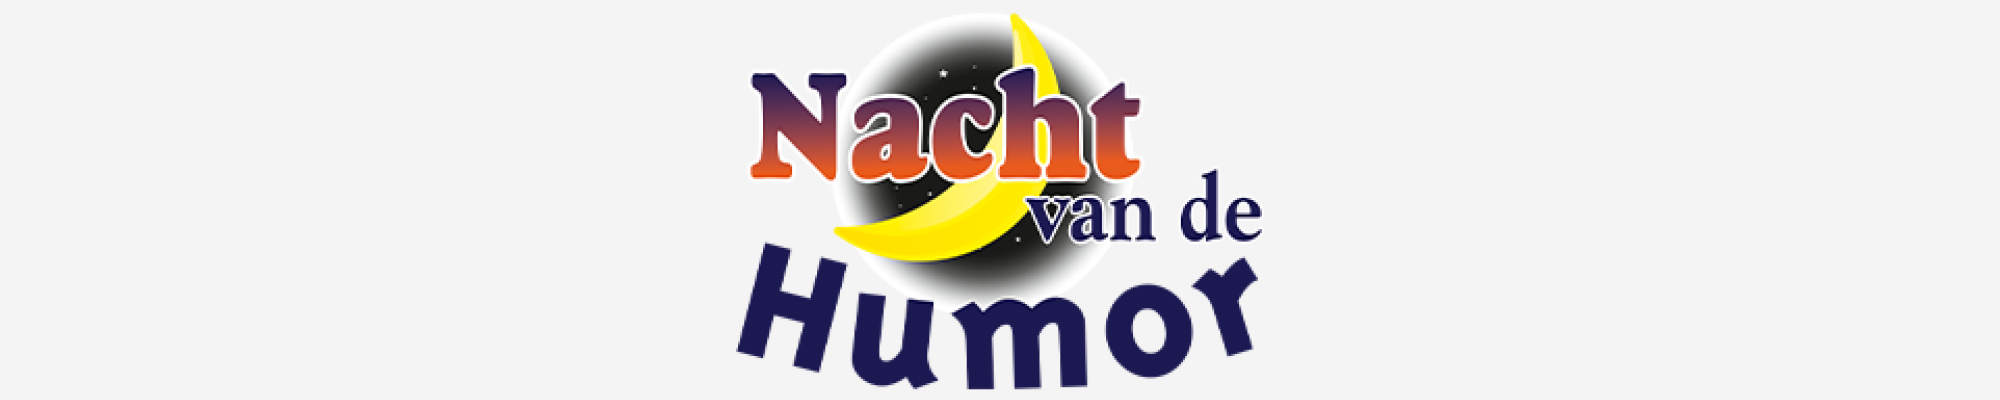 nacht van de humor logo